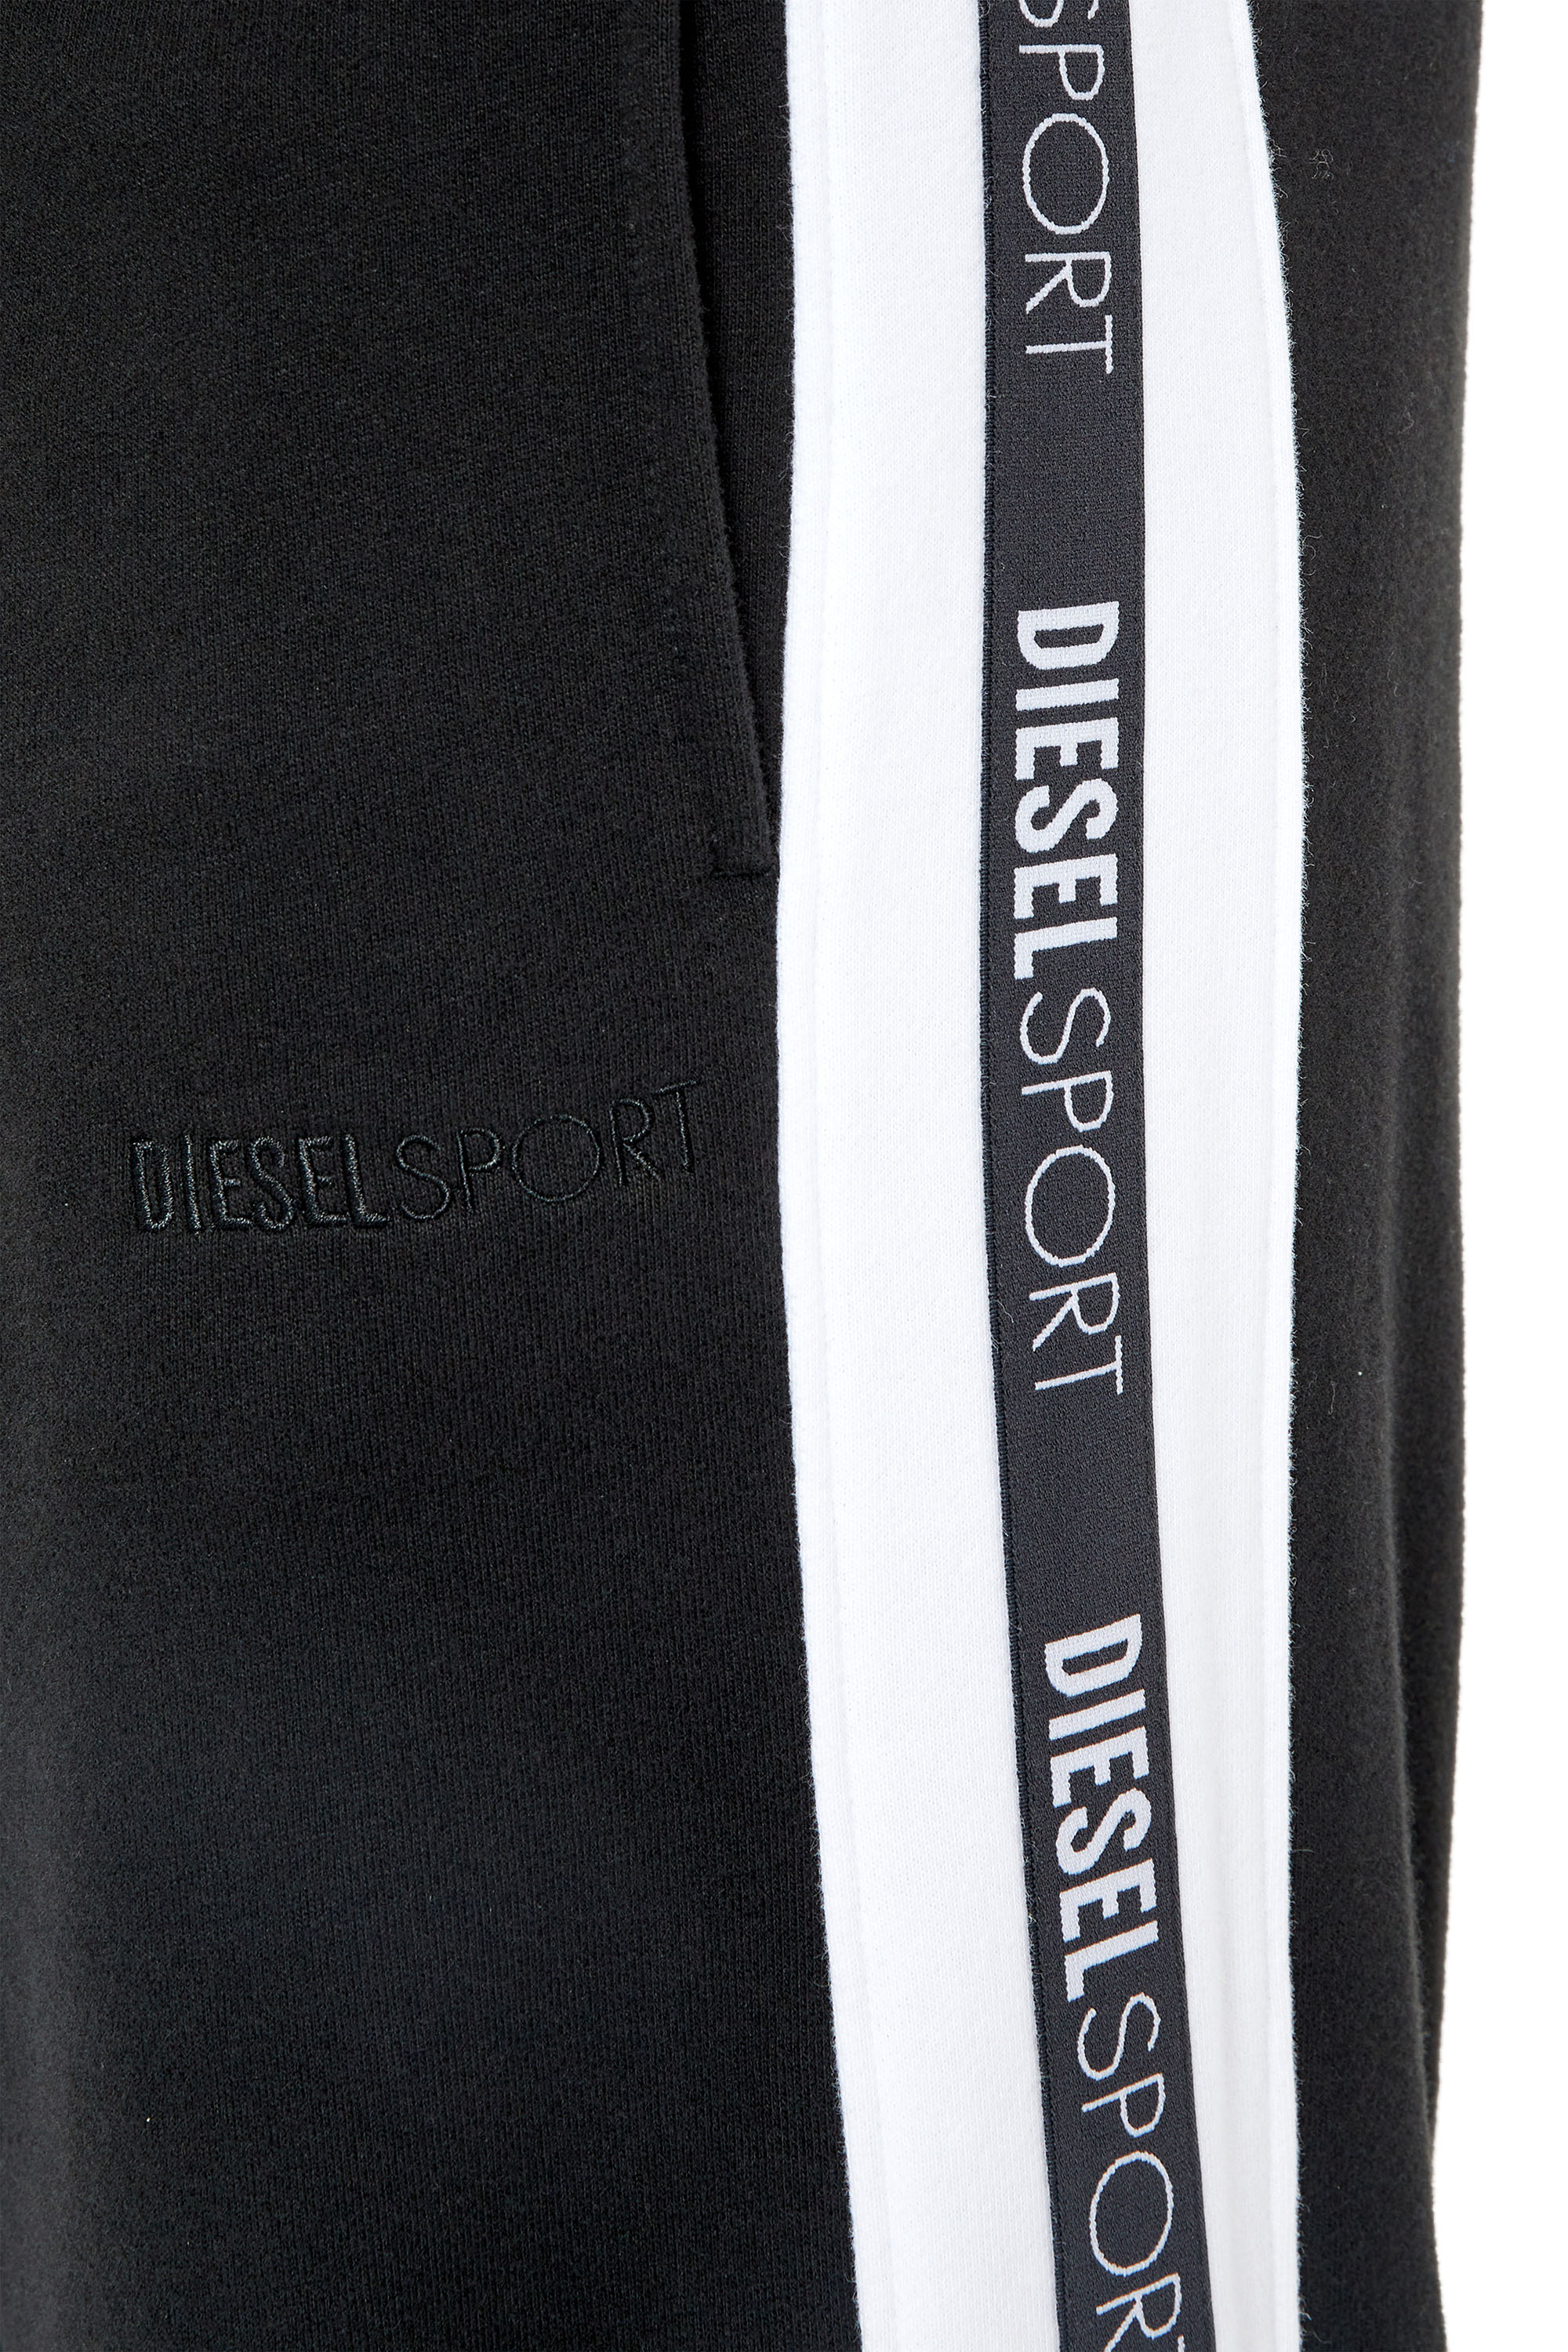 Diesel - AMSB-JAGER-HT33, Black - Image 3